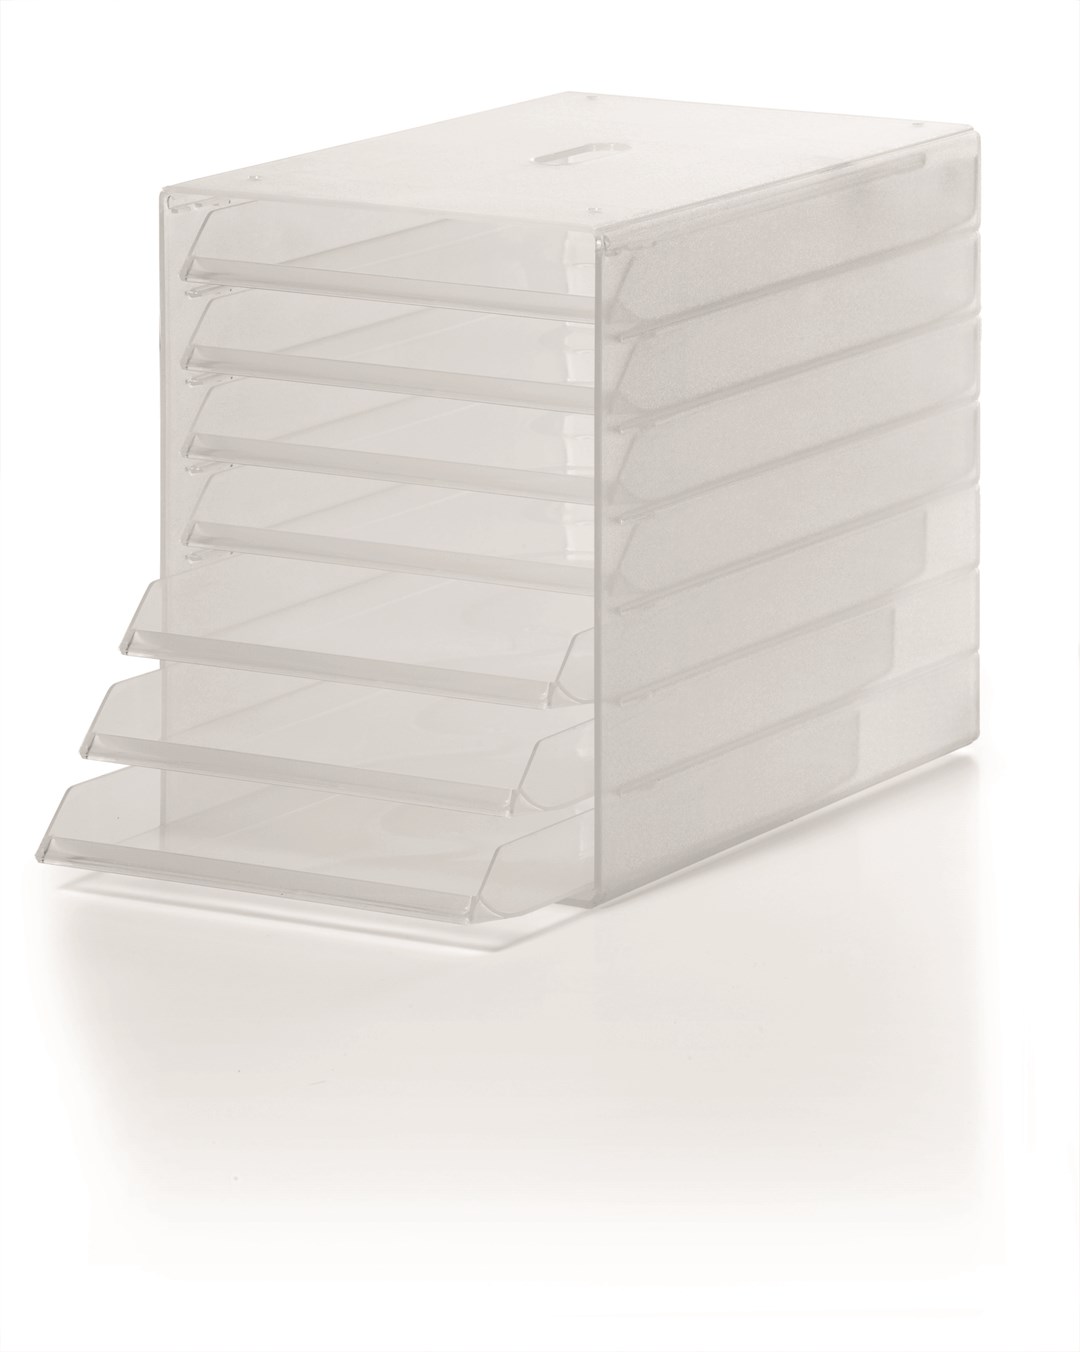 IDEALBOX A4 pojemnik z 7 szufladami  przezroczysty